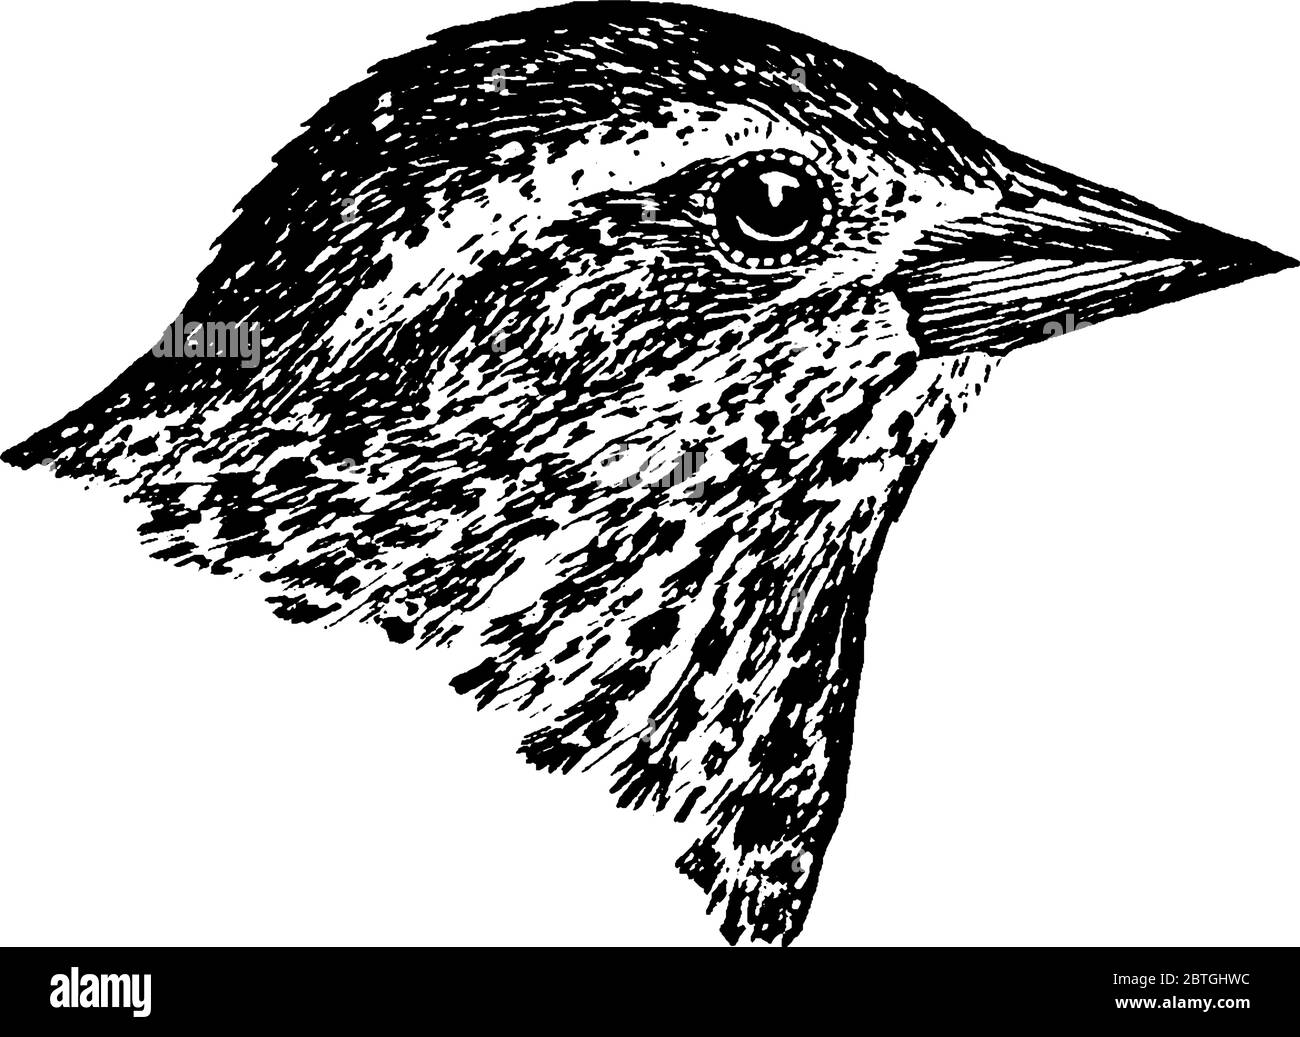 Der Rotflügelige Schwarzvogel, ein Singvogel der Familie Icteridae, der in den meisten Teilen Nord- und Mittelamerikas gefunden wird, Vintage-Strichzeichnung oder -Hauptvogel Stock Vektor